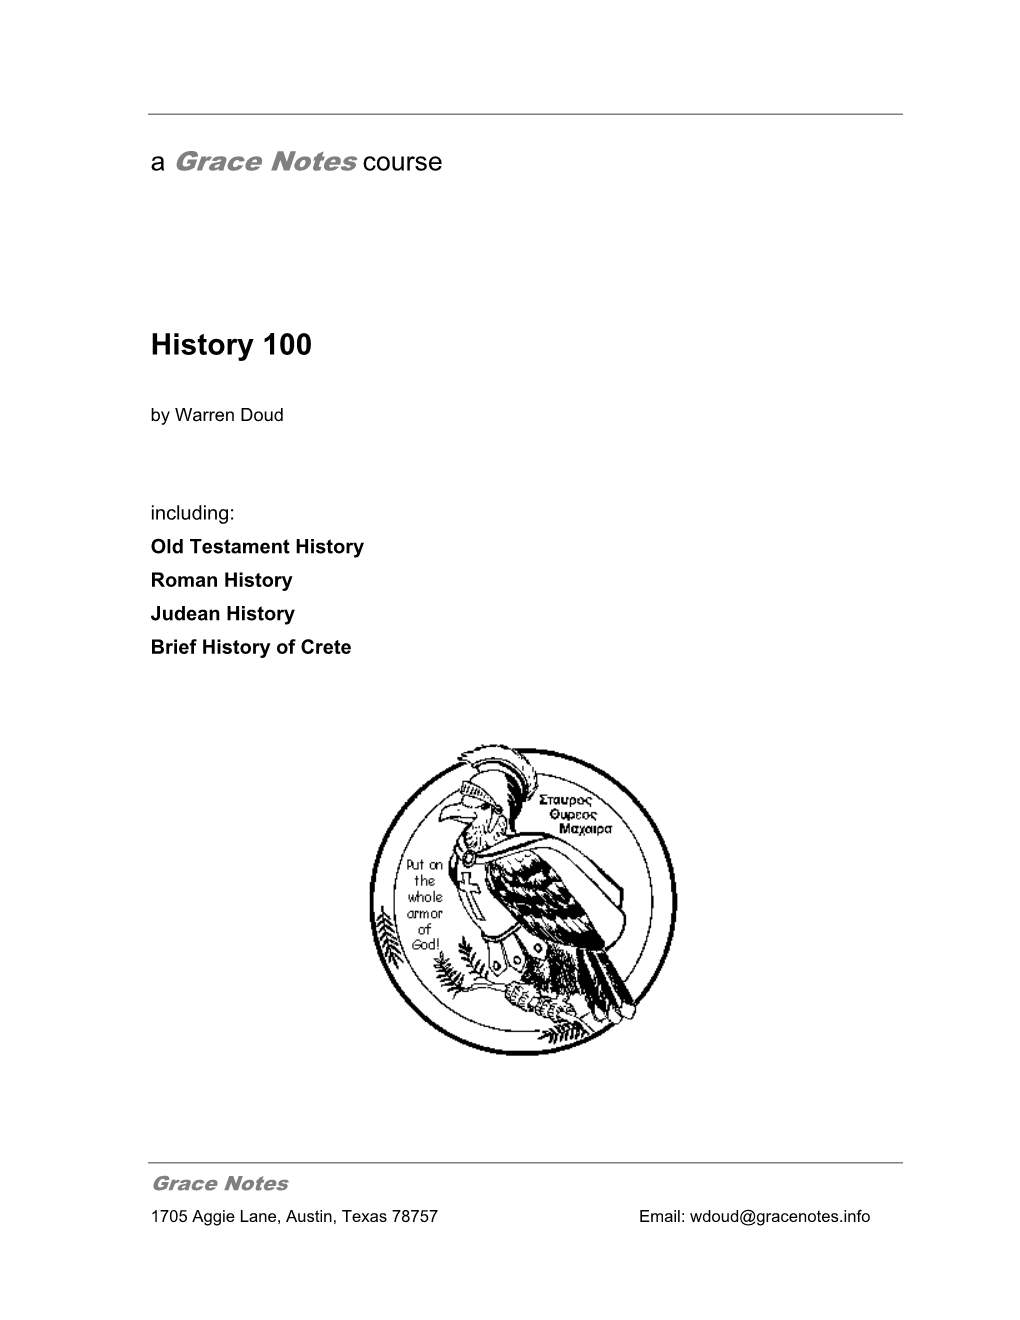 History 100 by Warren Doud